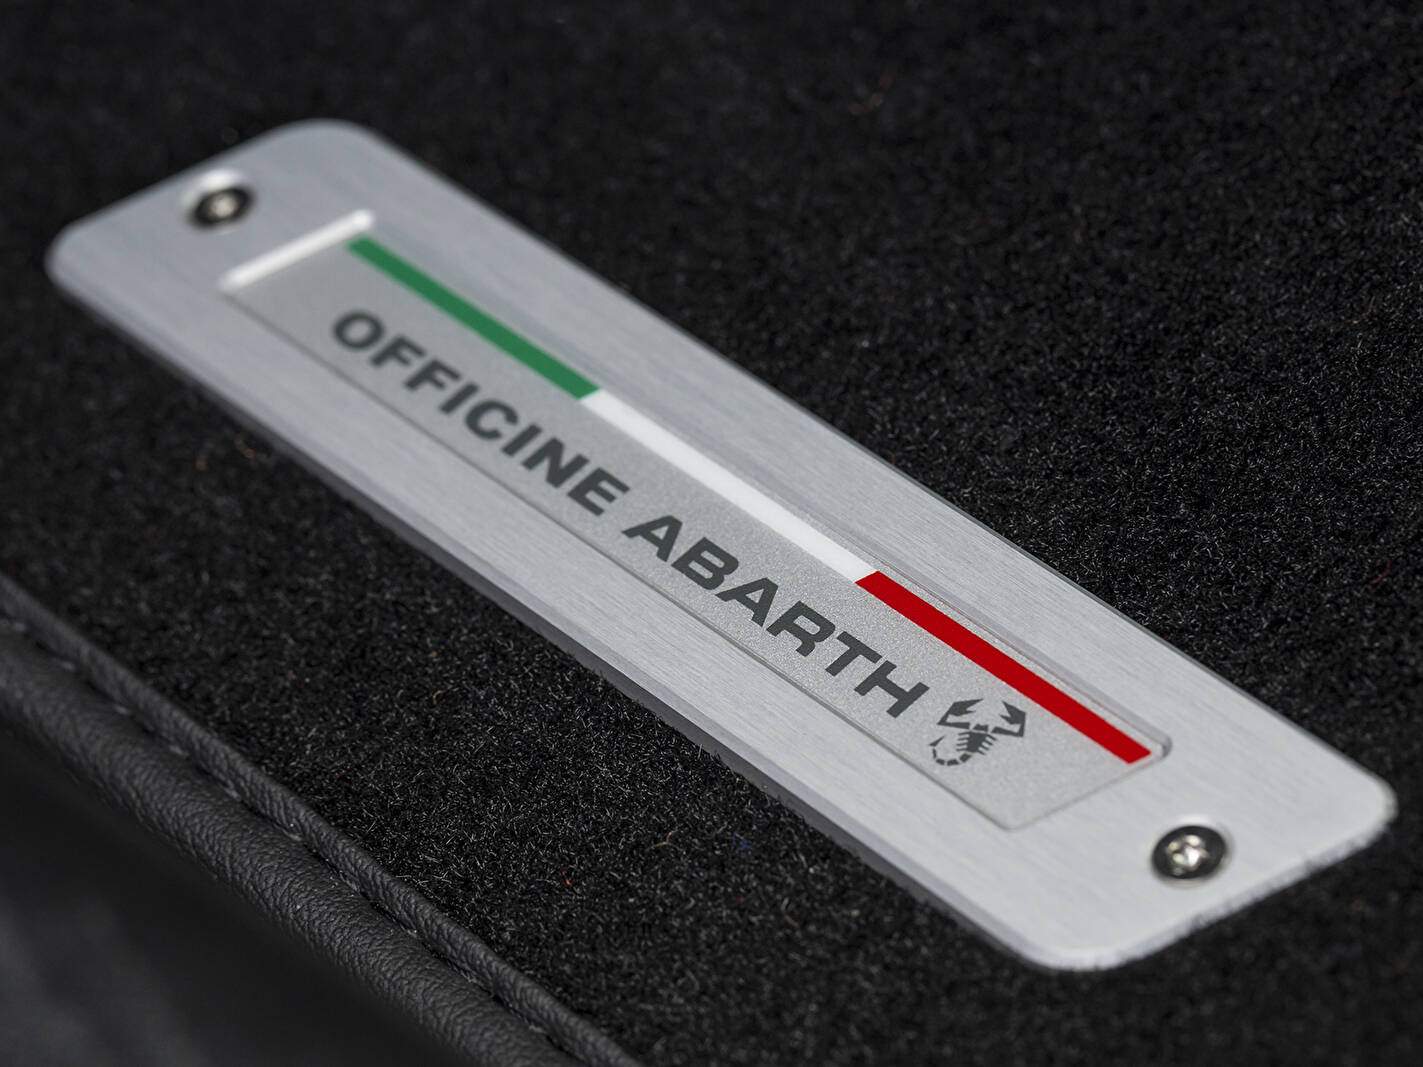 Abarth 695C XSR Yamaha Limited Edition (2017),  ajouté par fox58